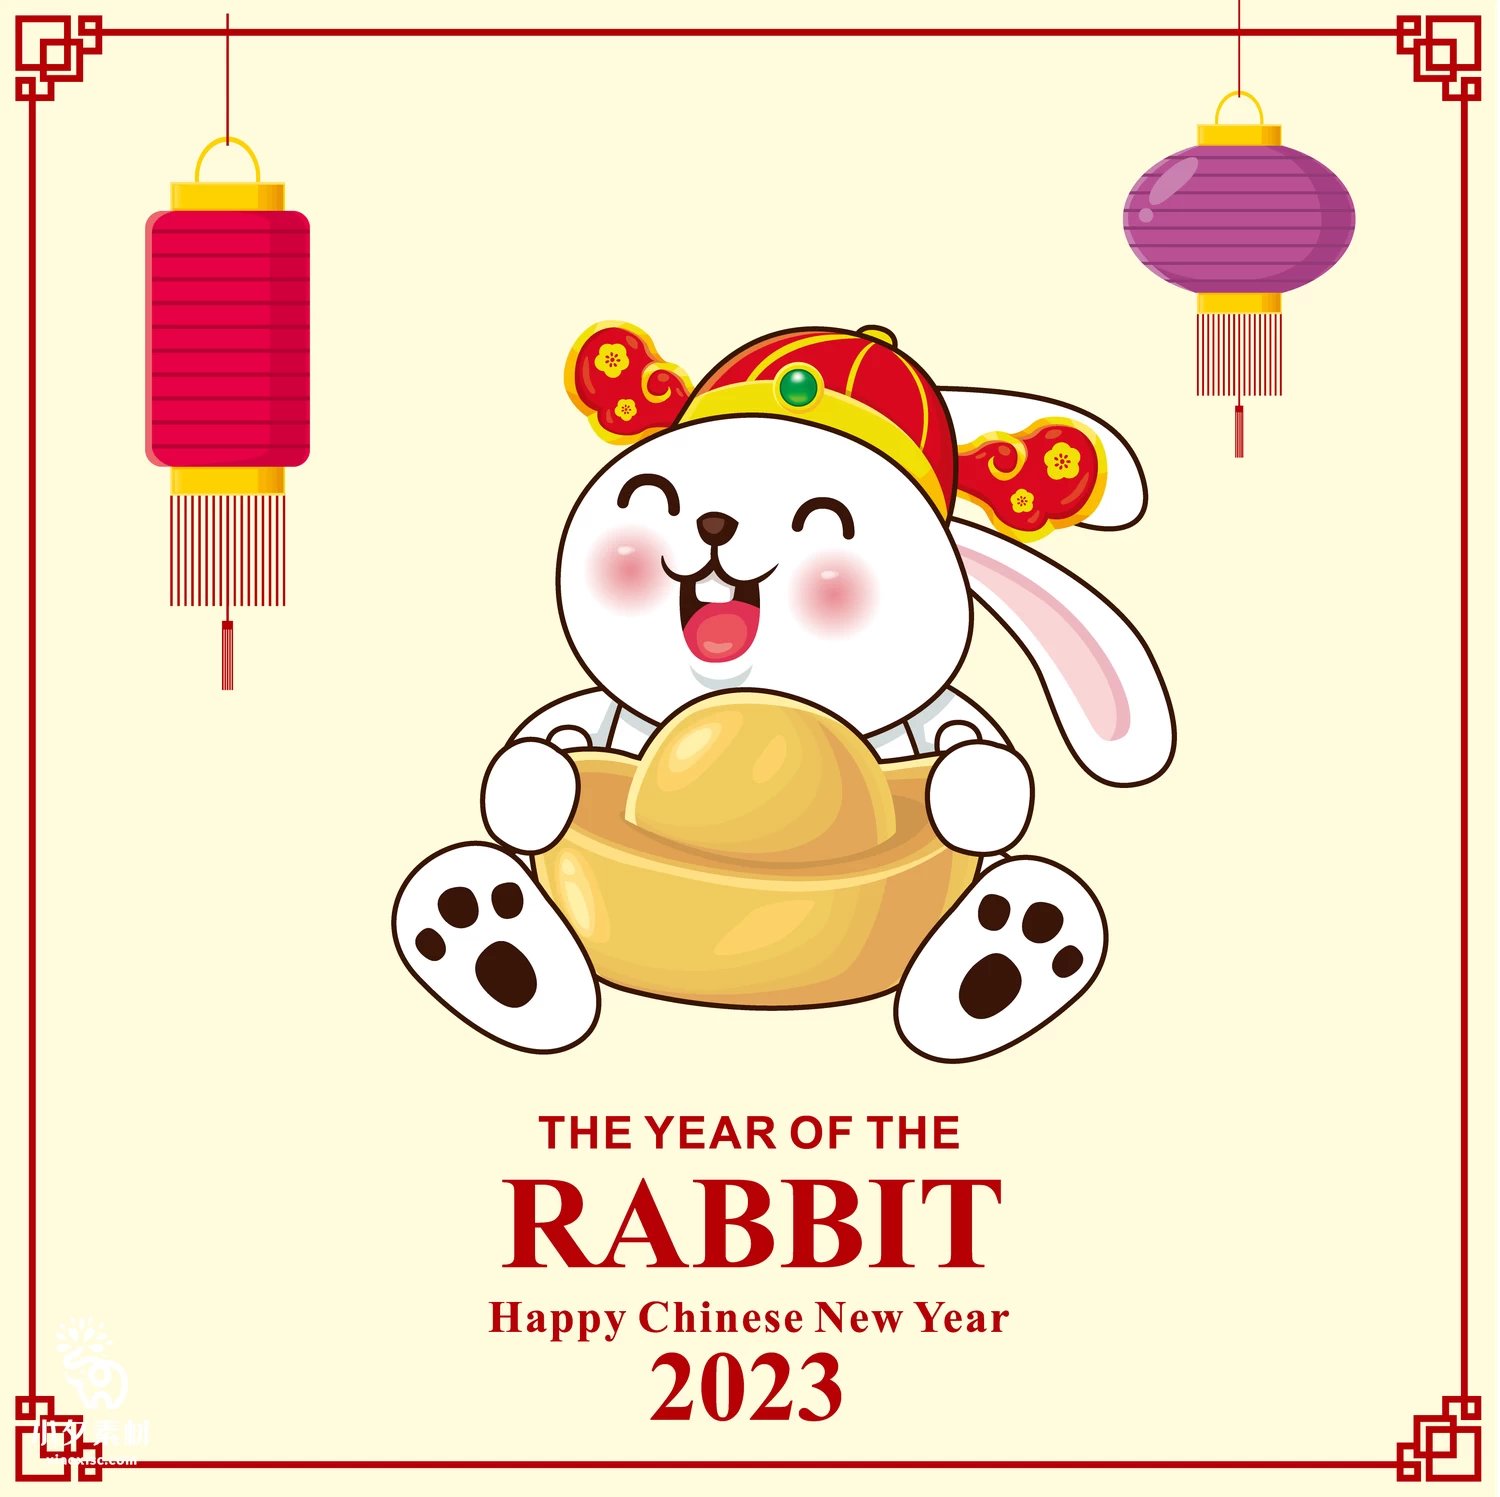 2023年兔年恭贺新春新年快乐喜庆节日宣传海报图片AI矢量设计素材【023】